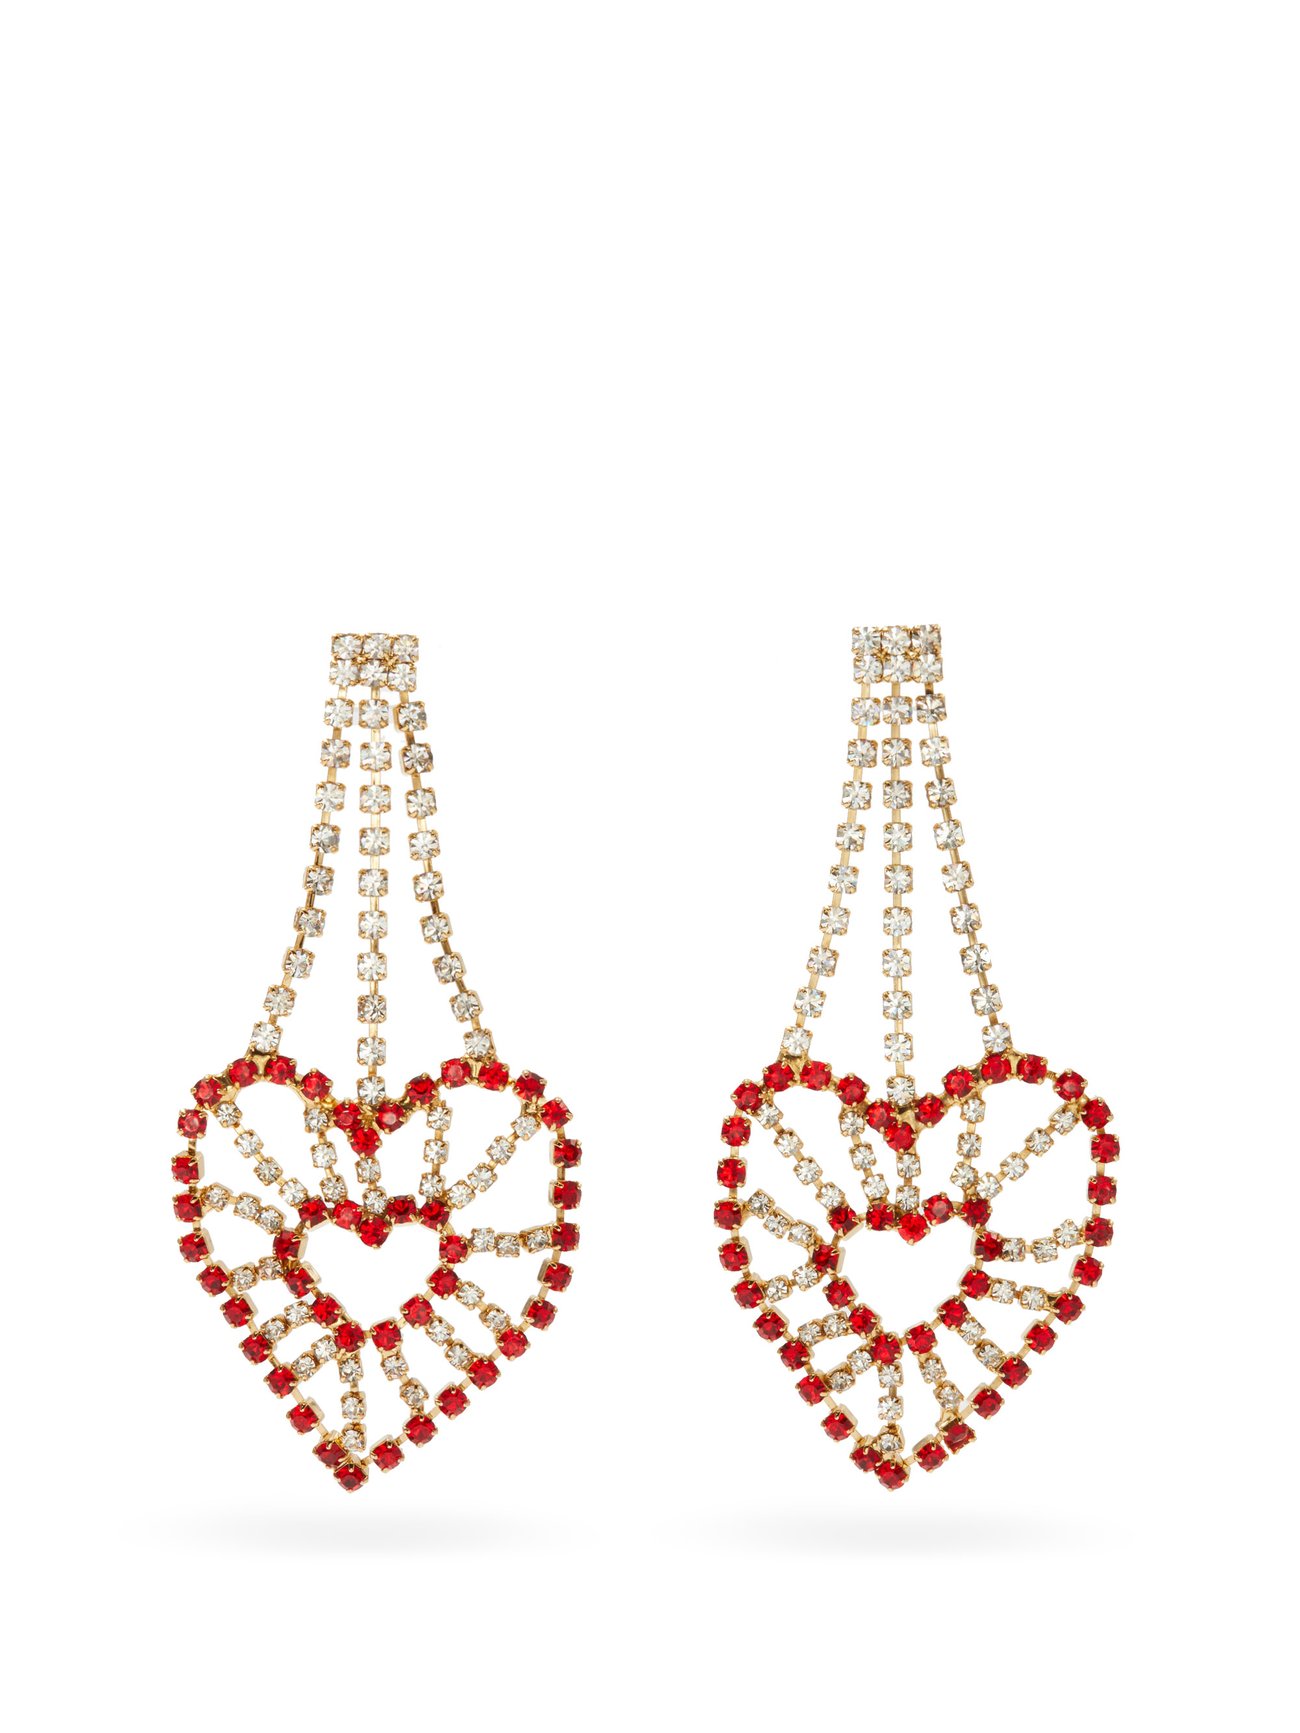 Rhodochrosite Earrings Chandelier Earrings Beaded Gemstone Earrings Vintage Earrings Boho Earrings Romantic Earrings Heart Chakra Jewelry